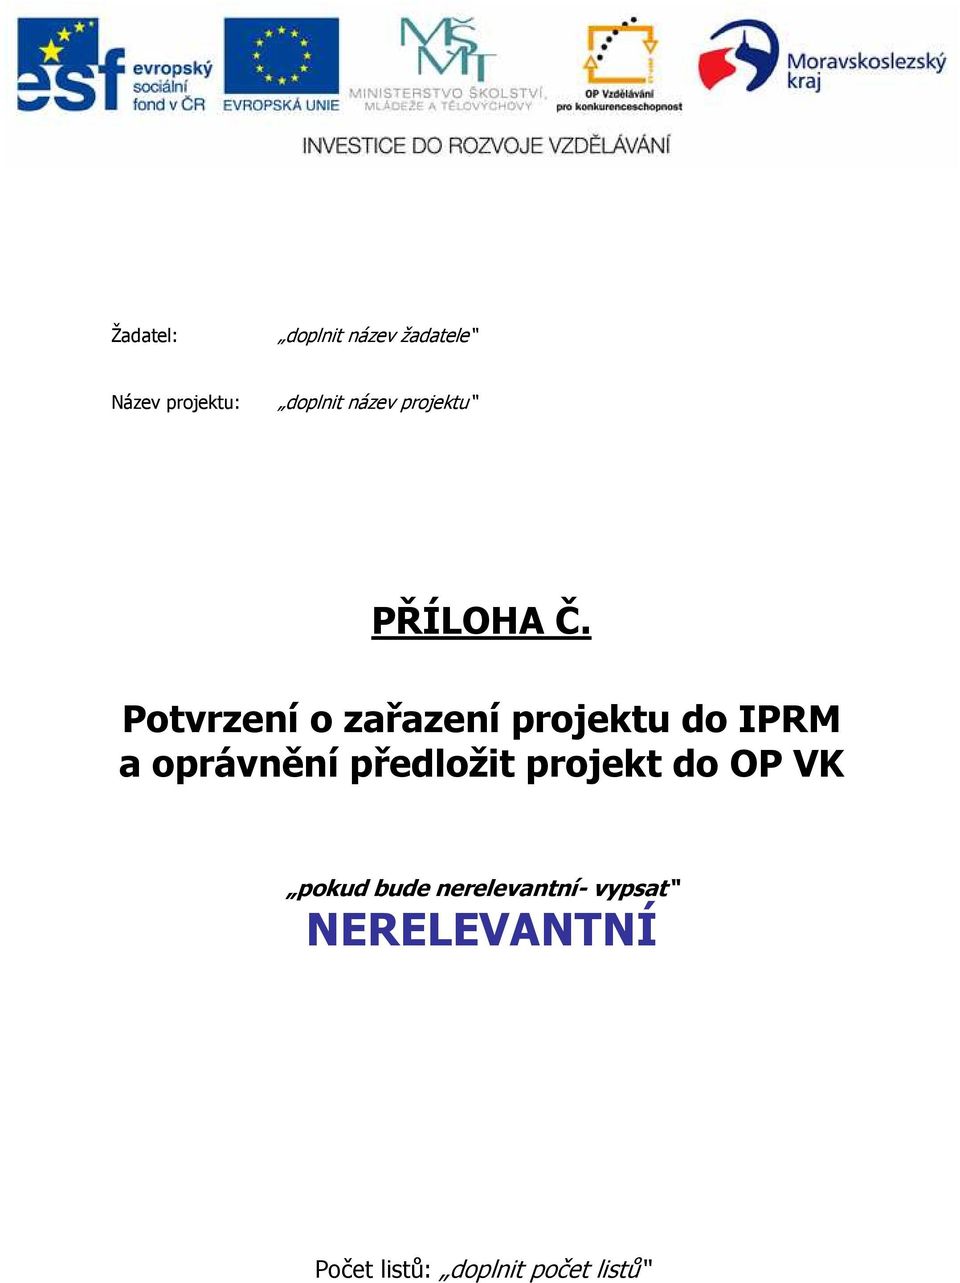 Potvrzení o zařazení projektu do IPRM a oprávnění